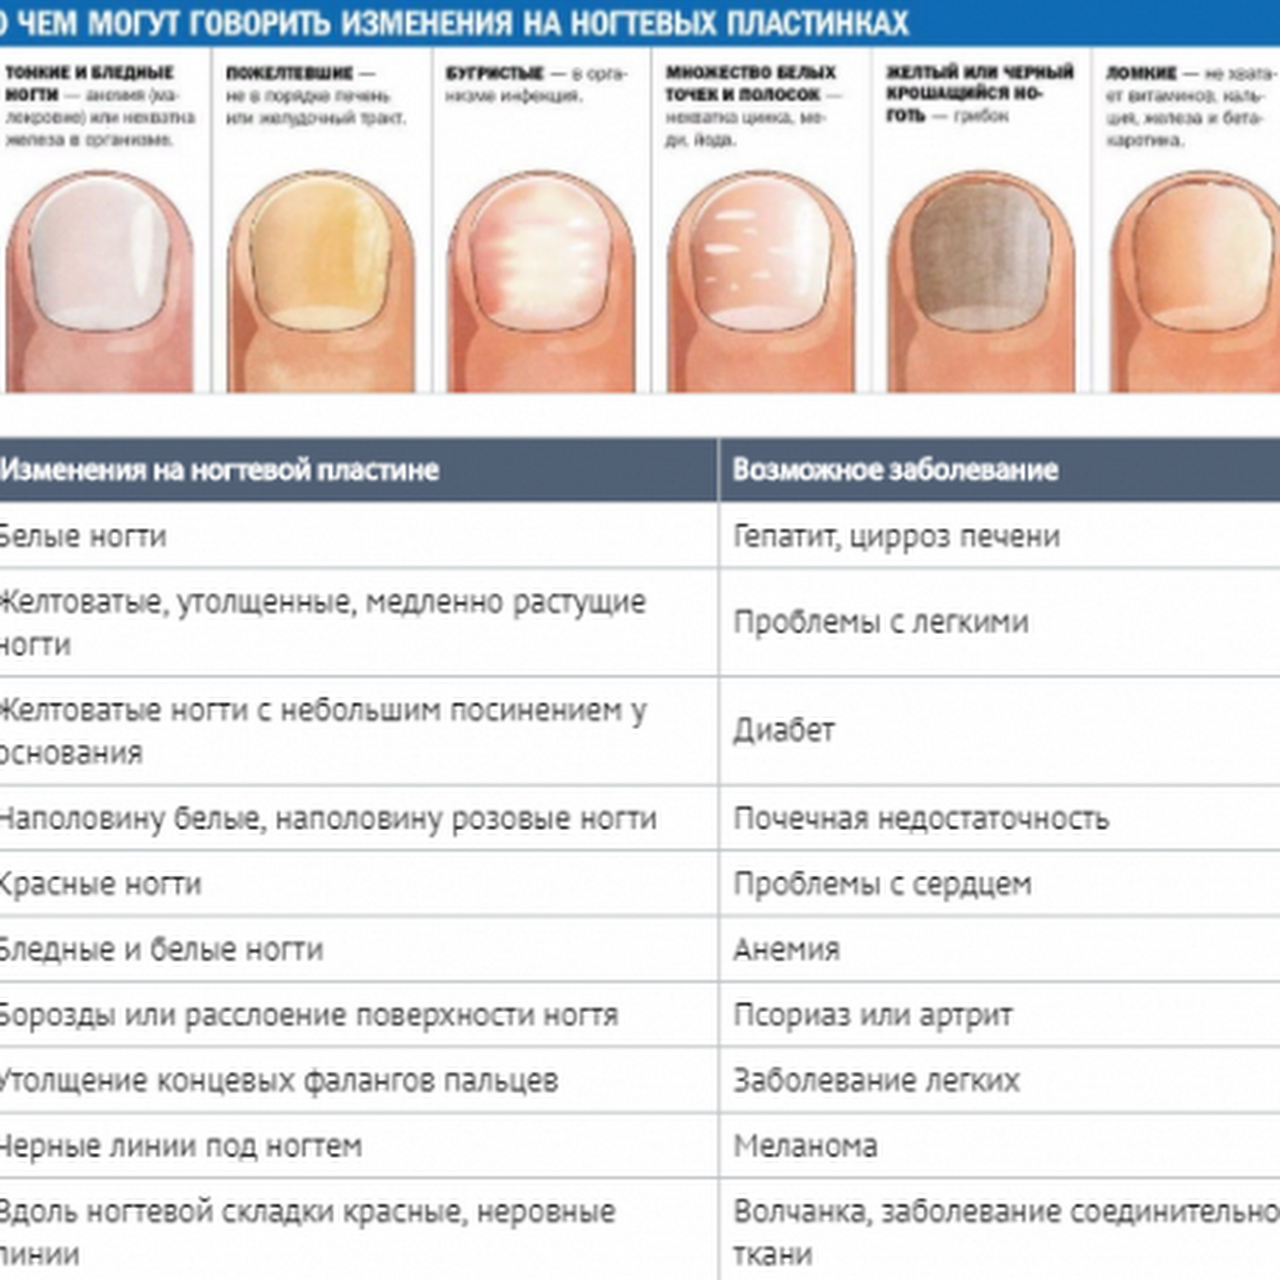 О чем говорит заболевание ногтей. Определение болезни по состоянию ногтей. Заболевания ногтей на руках таблица описание. Как определить по цвету ногтей заболевание. Выявление болезни по ногтям.